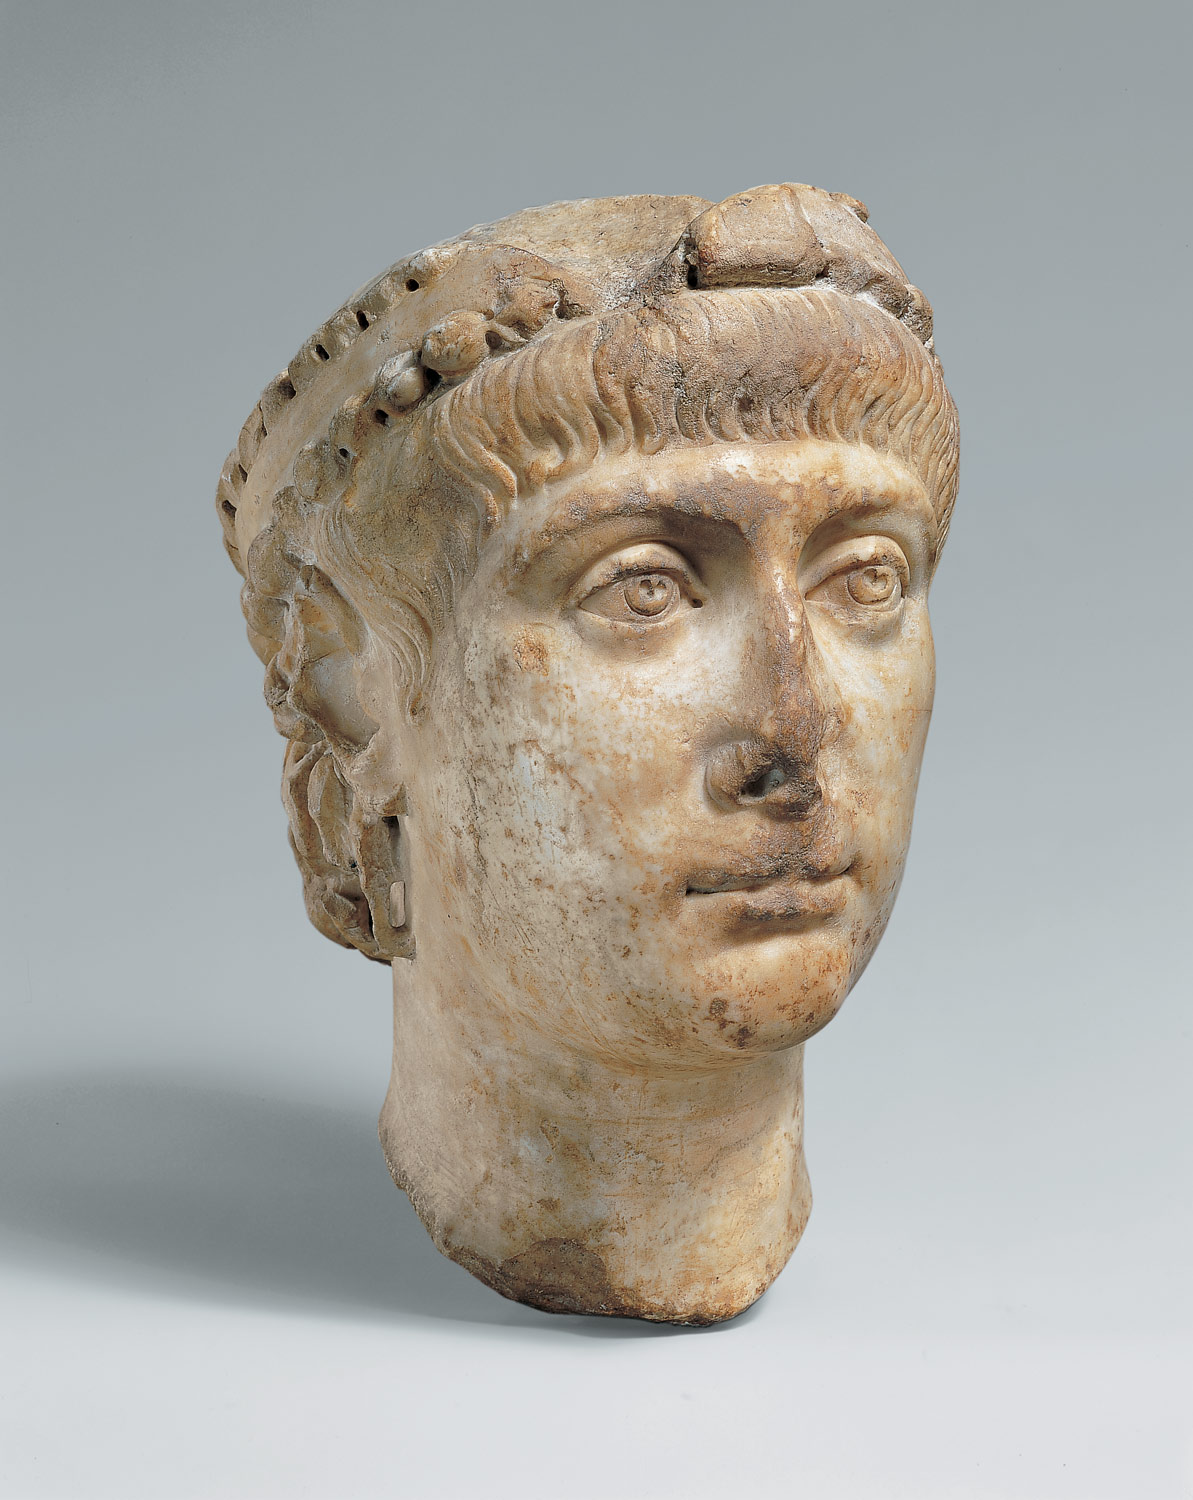 Head of Emperor Constans (r. 337-350)